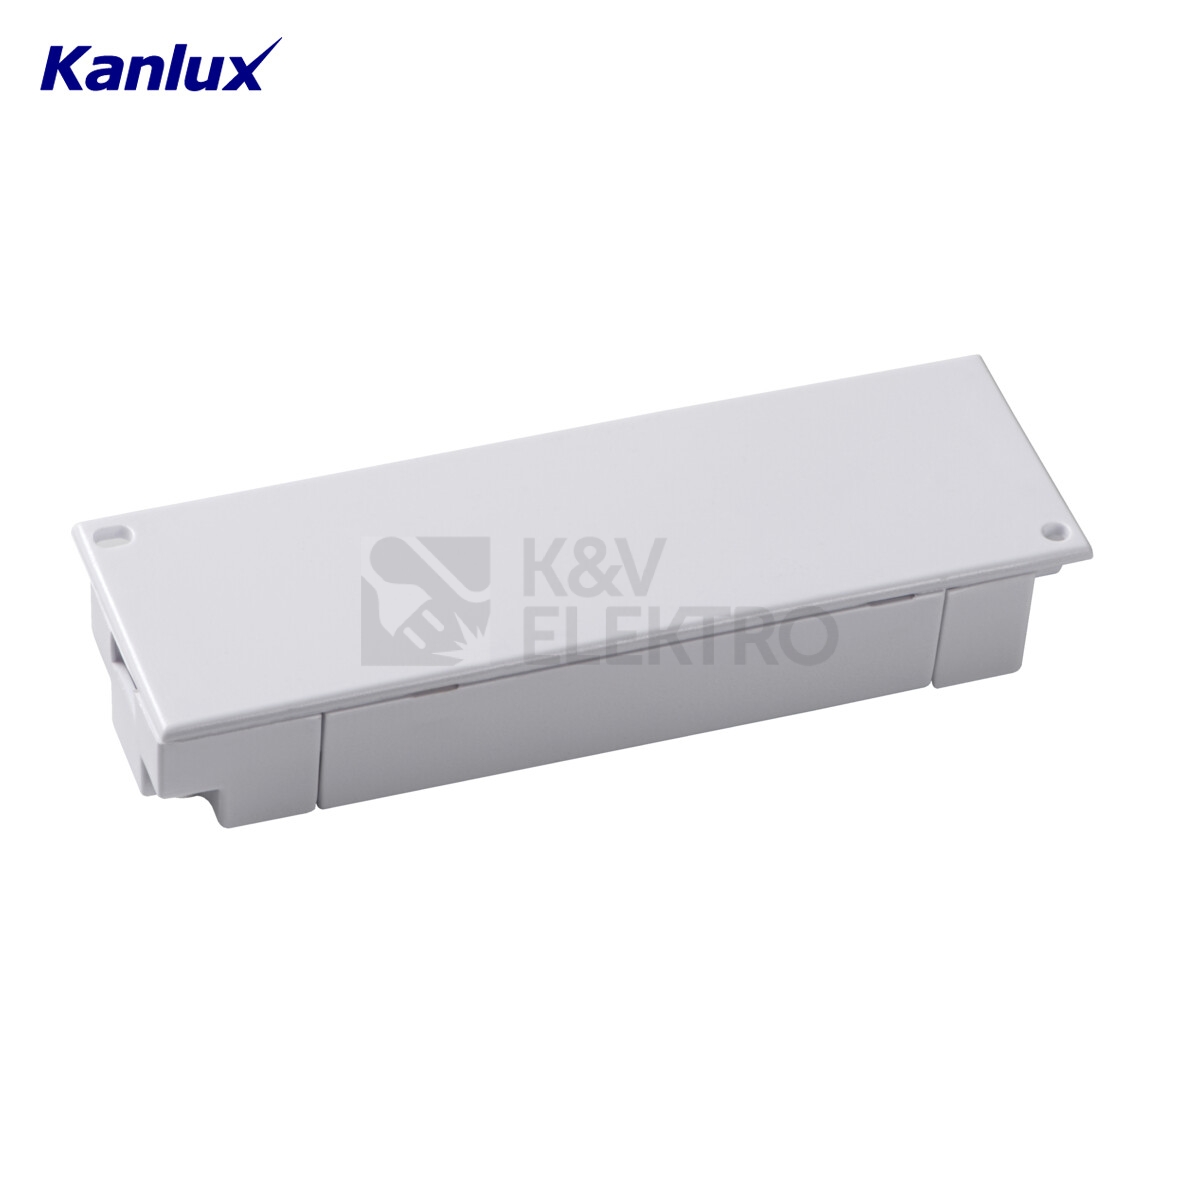 Obrázek produktu Elektronický transformátor Kanlux SET105-K 230/12VAC 35-105W 01426 3